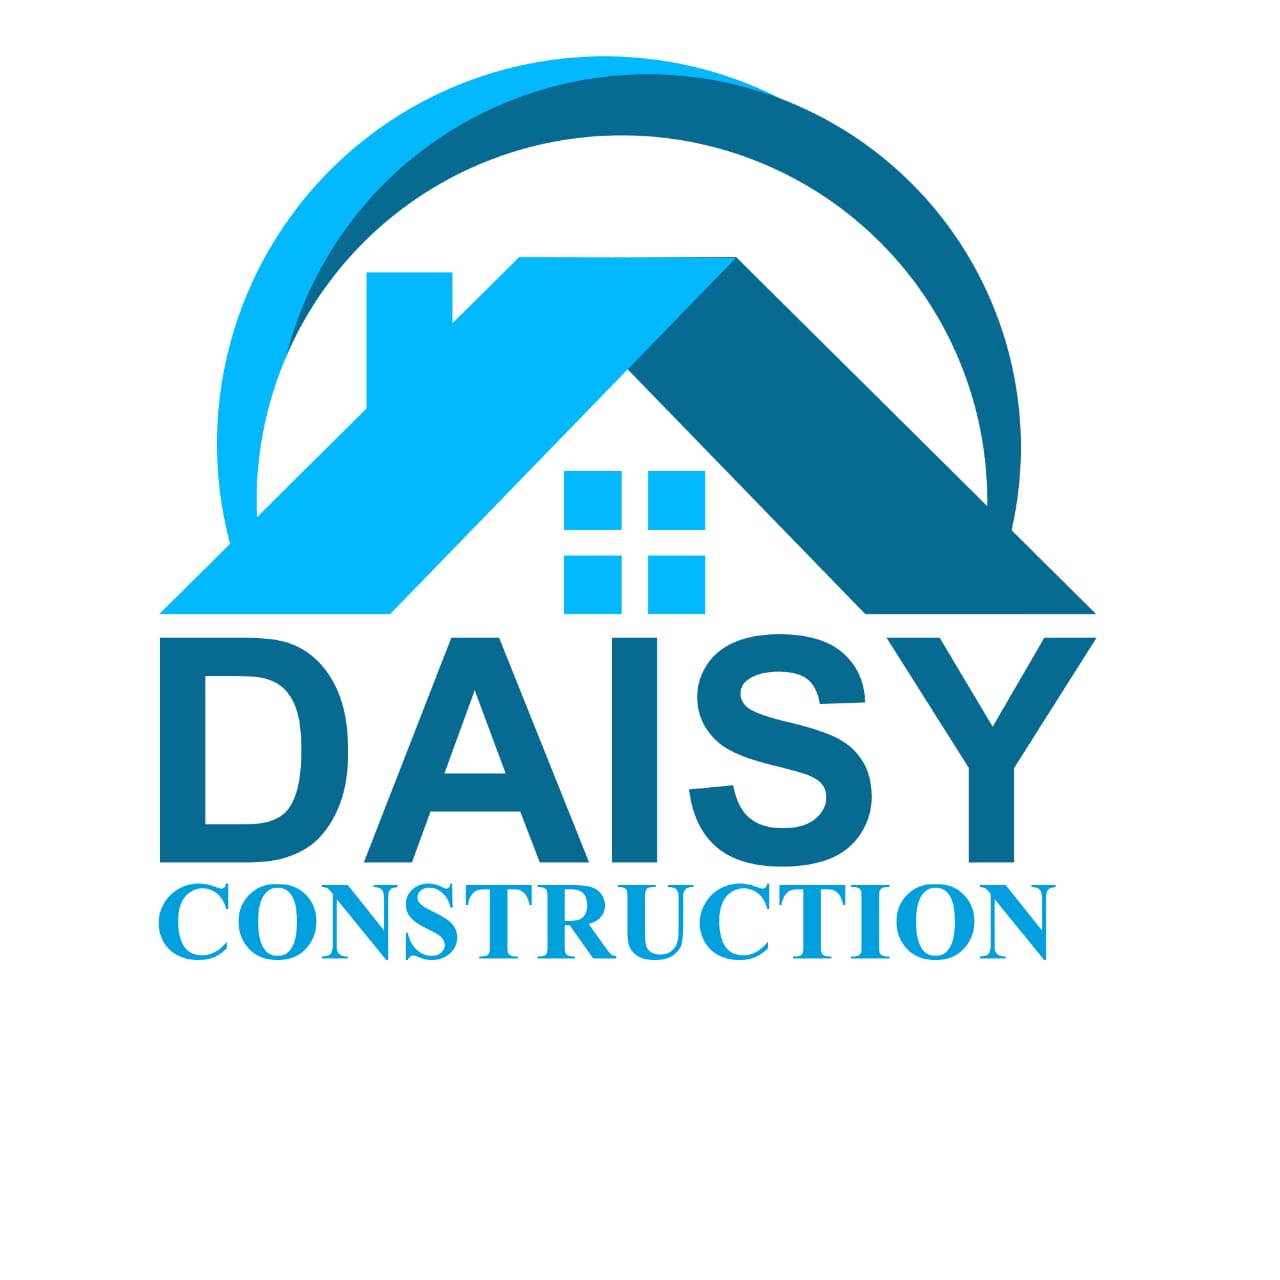 DAISY CONSTRUCTION logo